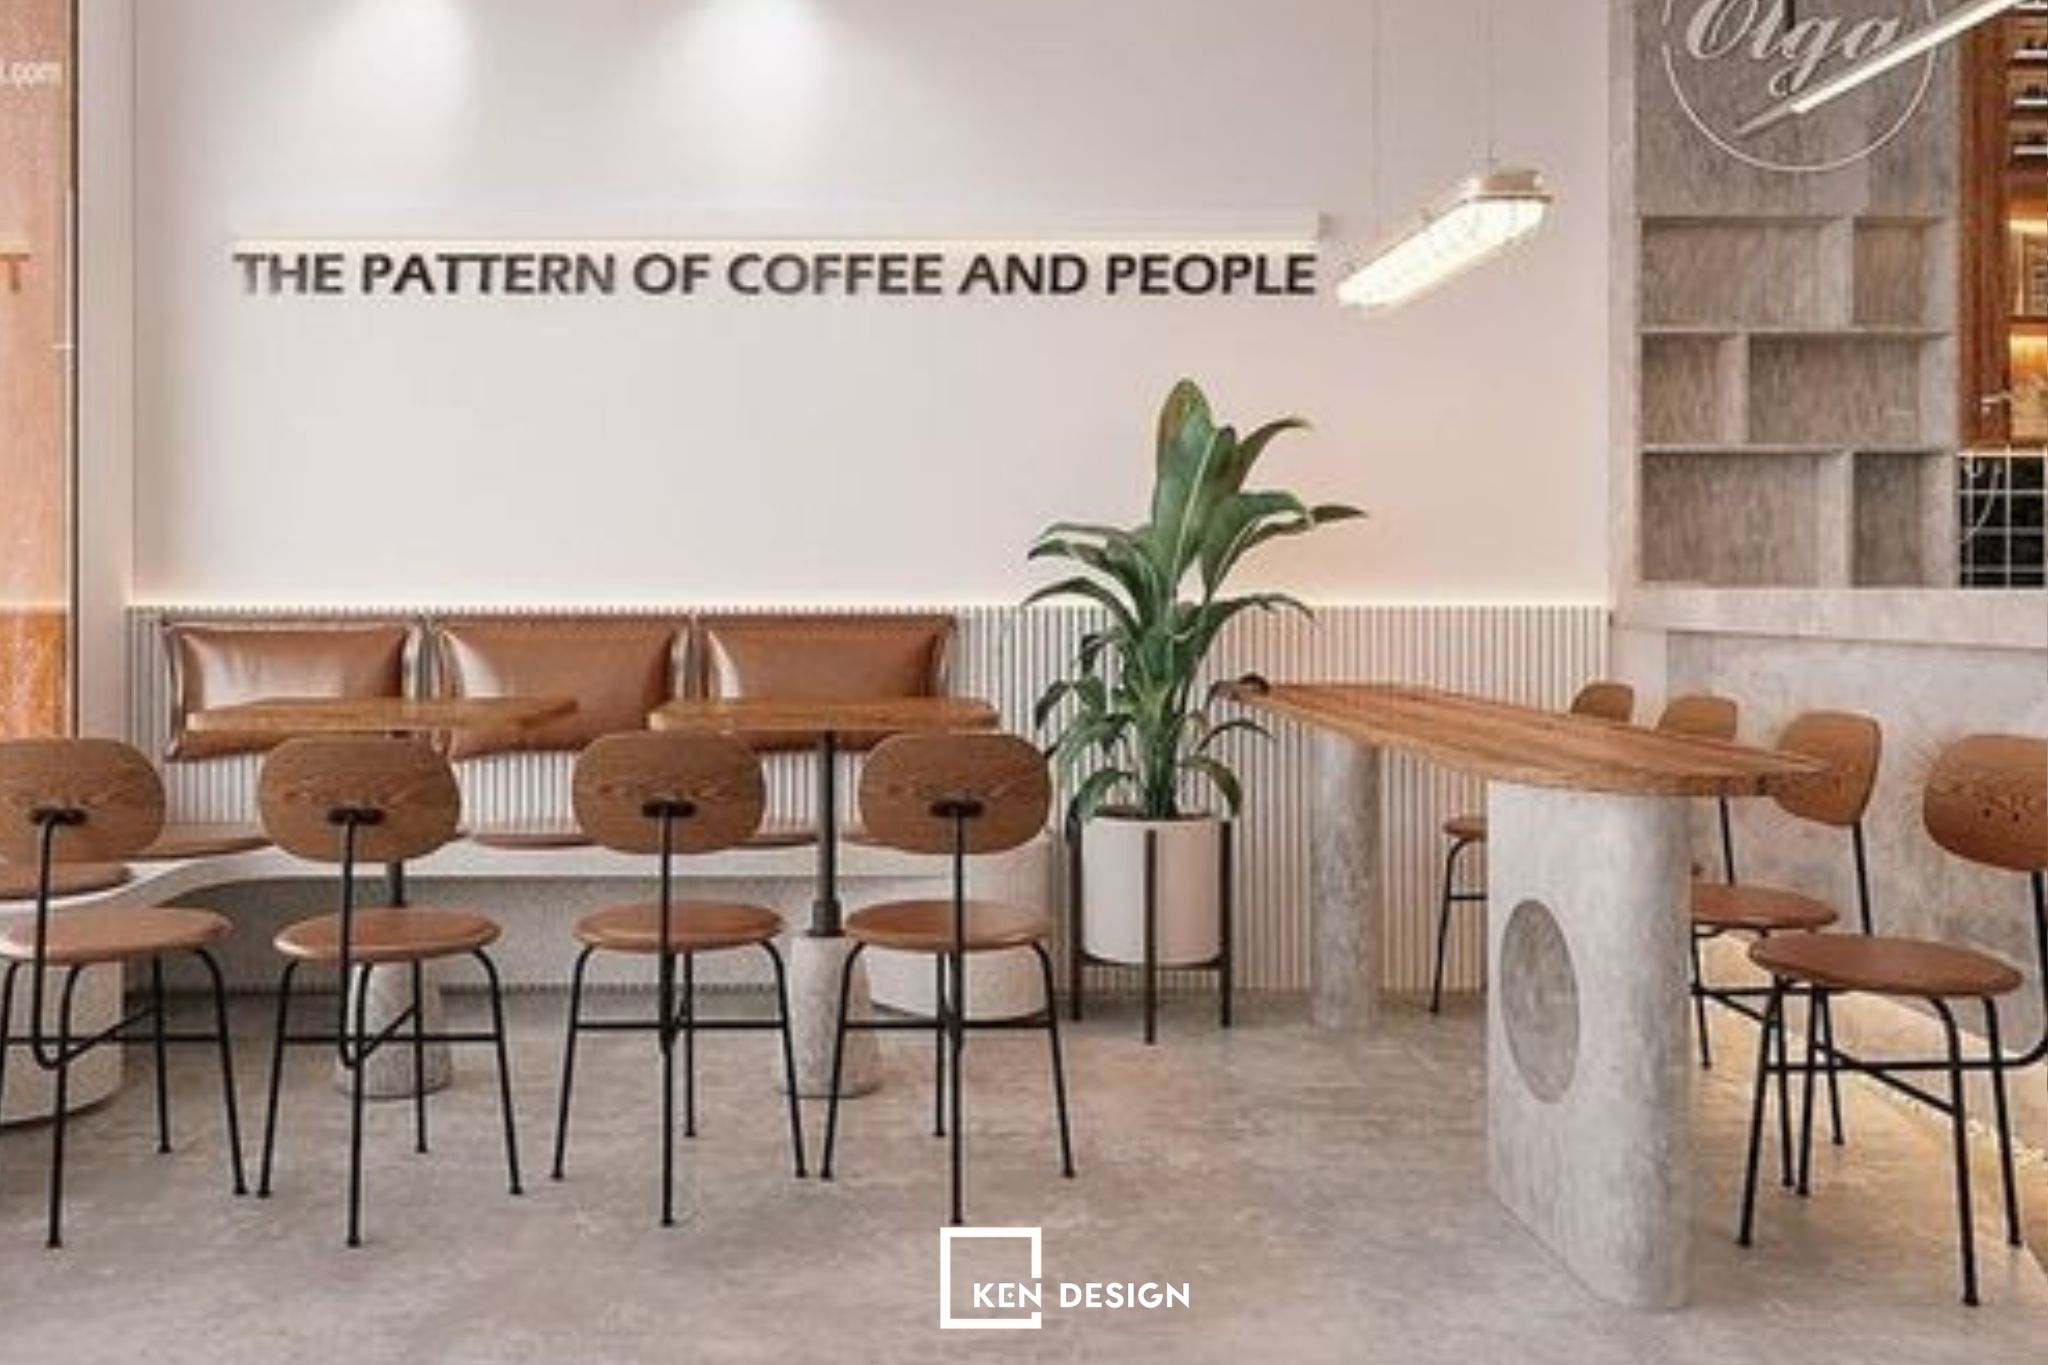 thiết kế quán cafe phong cách hiện đại